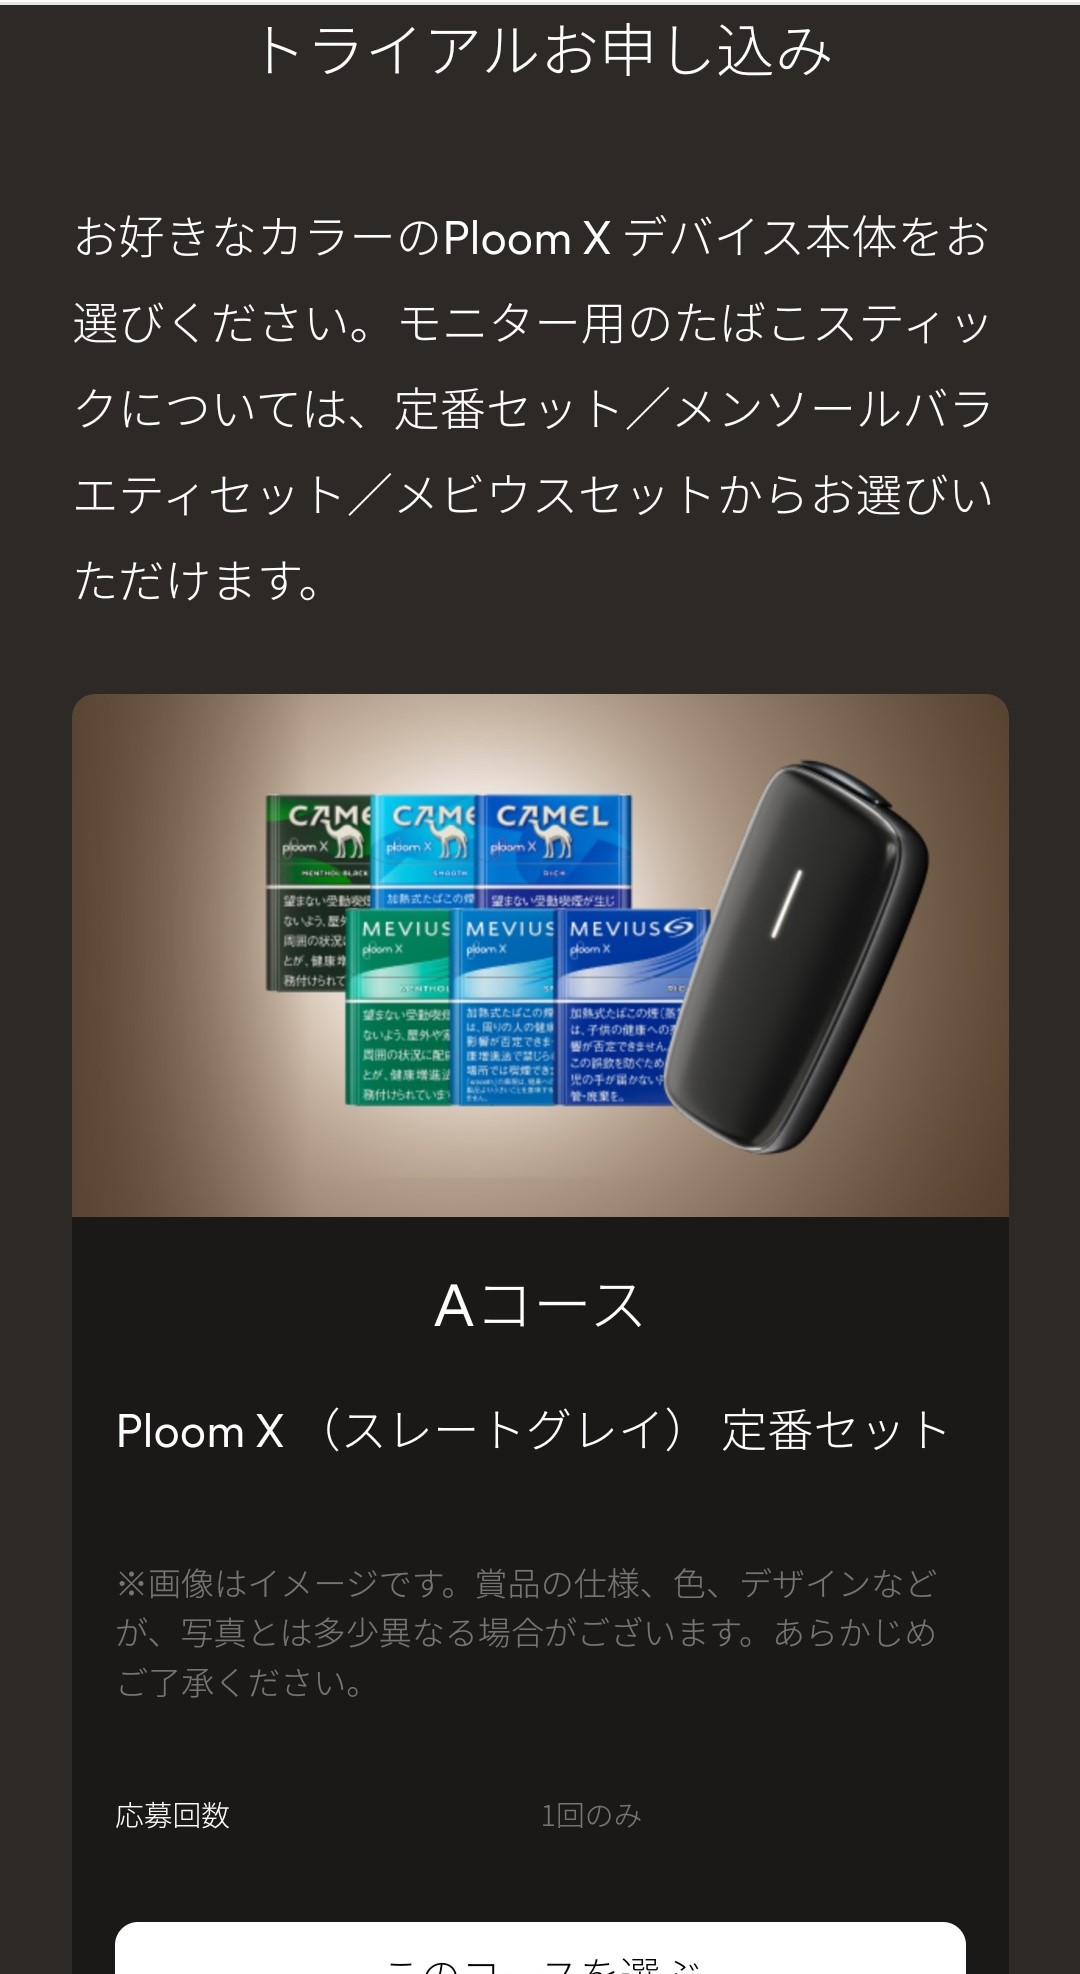 PloomXフリートライアルの申し込み画面